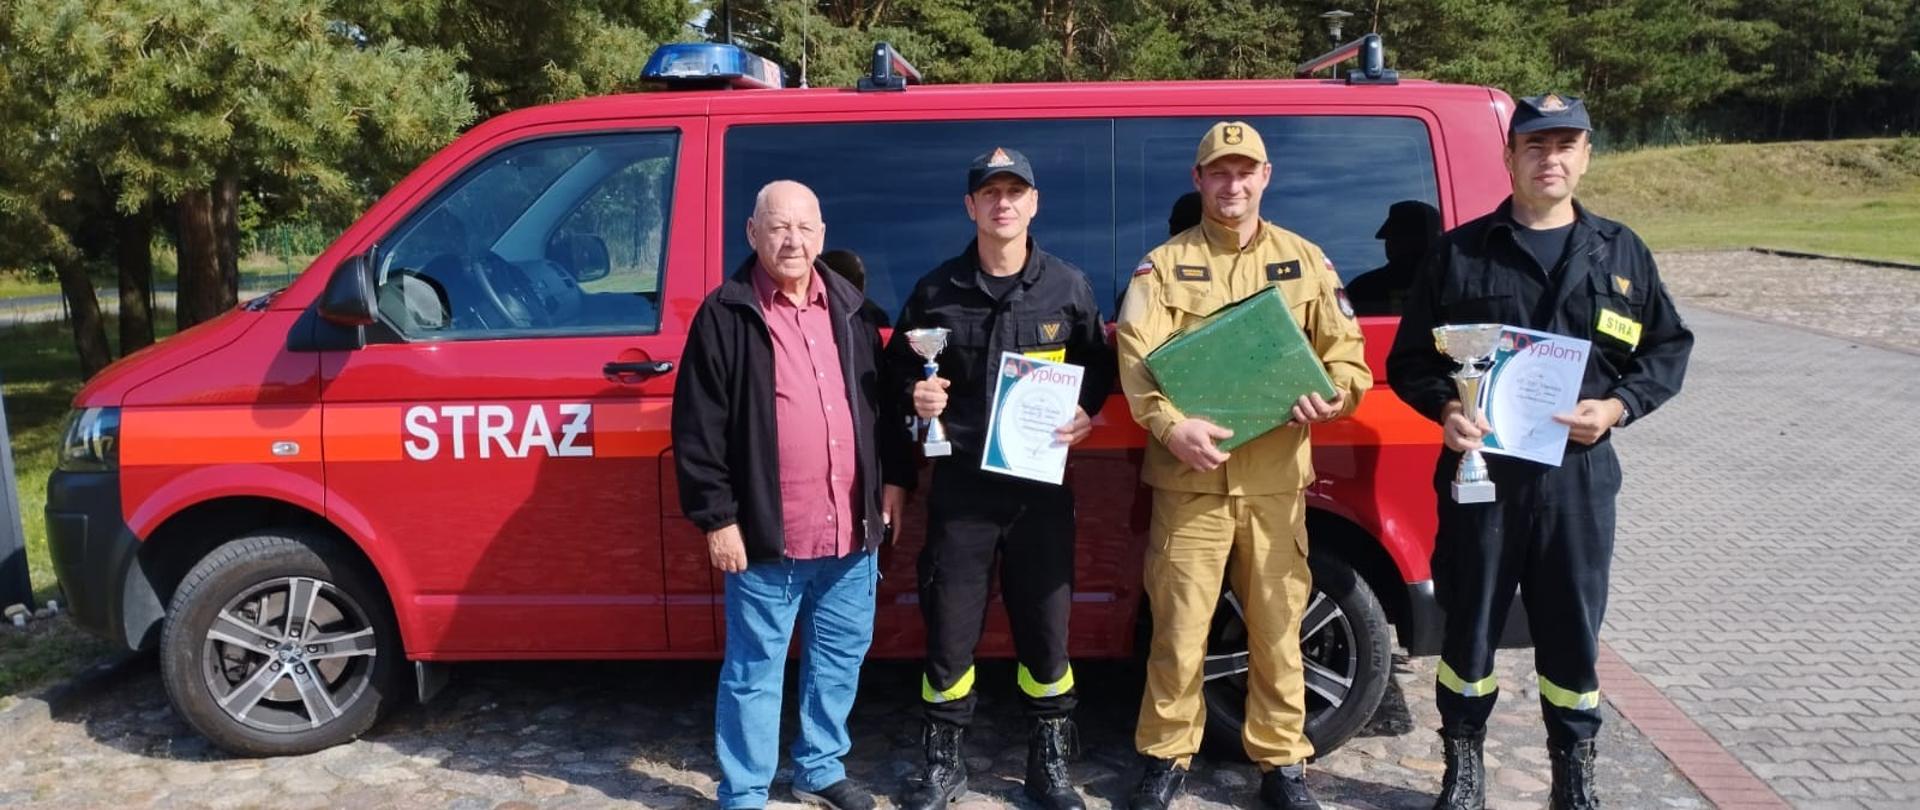 Zdjęcie przedstawia trzech strażaków z dyplomami oraz z trenerem na tle samochodu pożarniczego